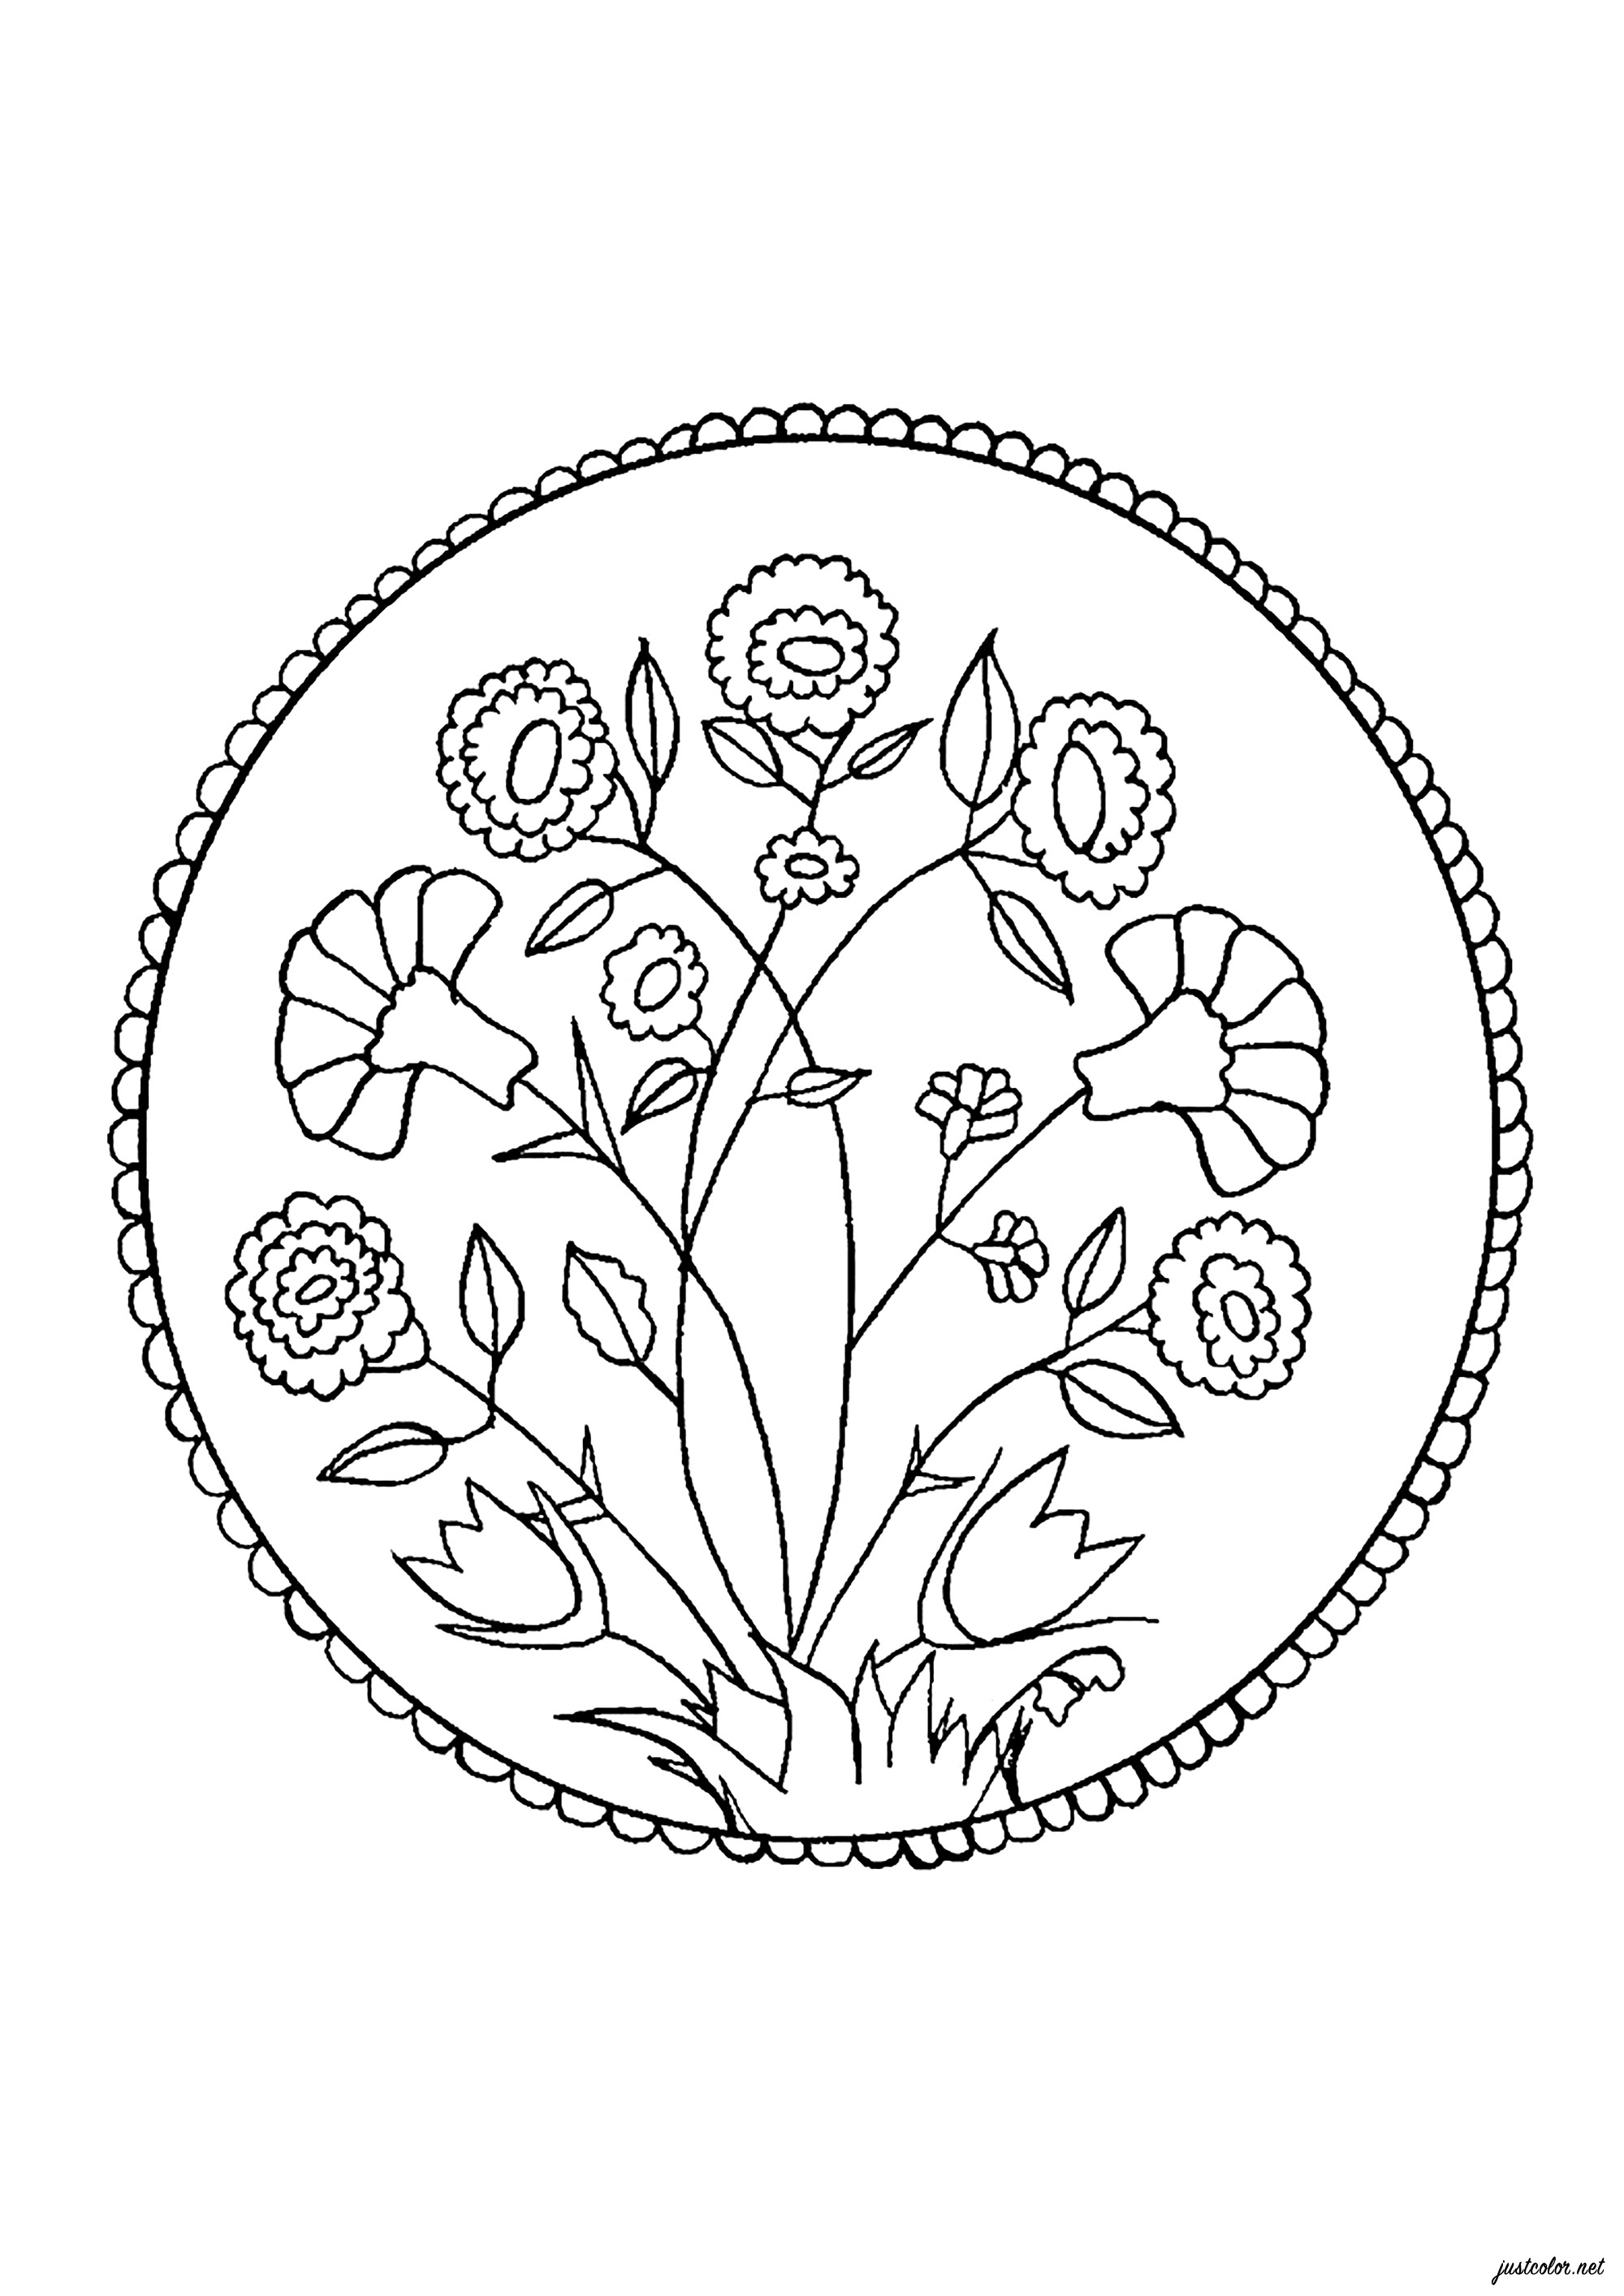 Colorir inspirado num prato do século XV